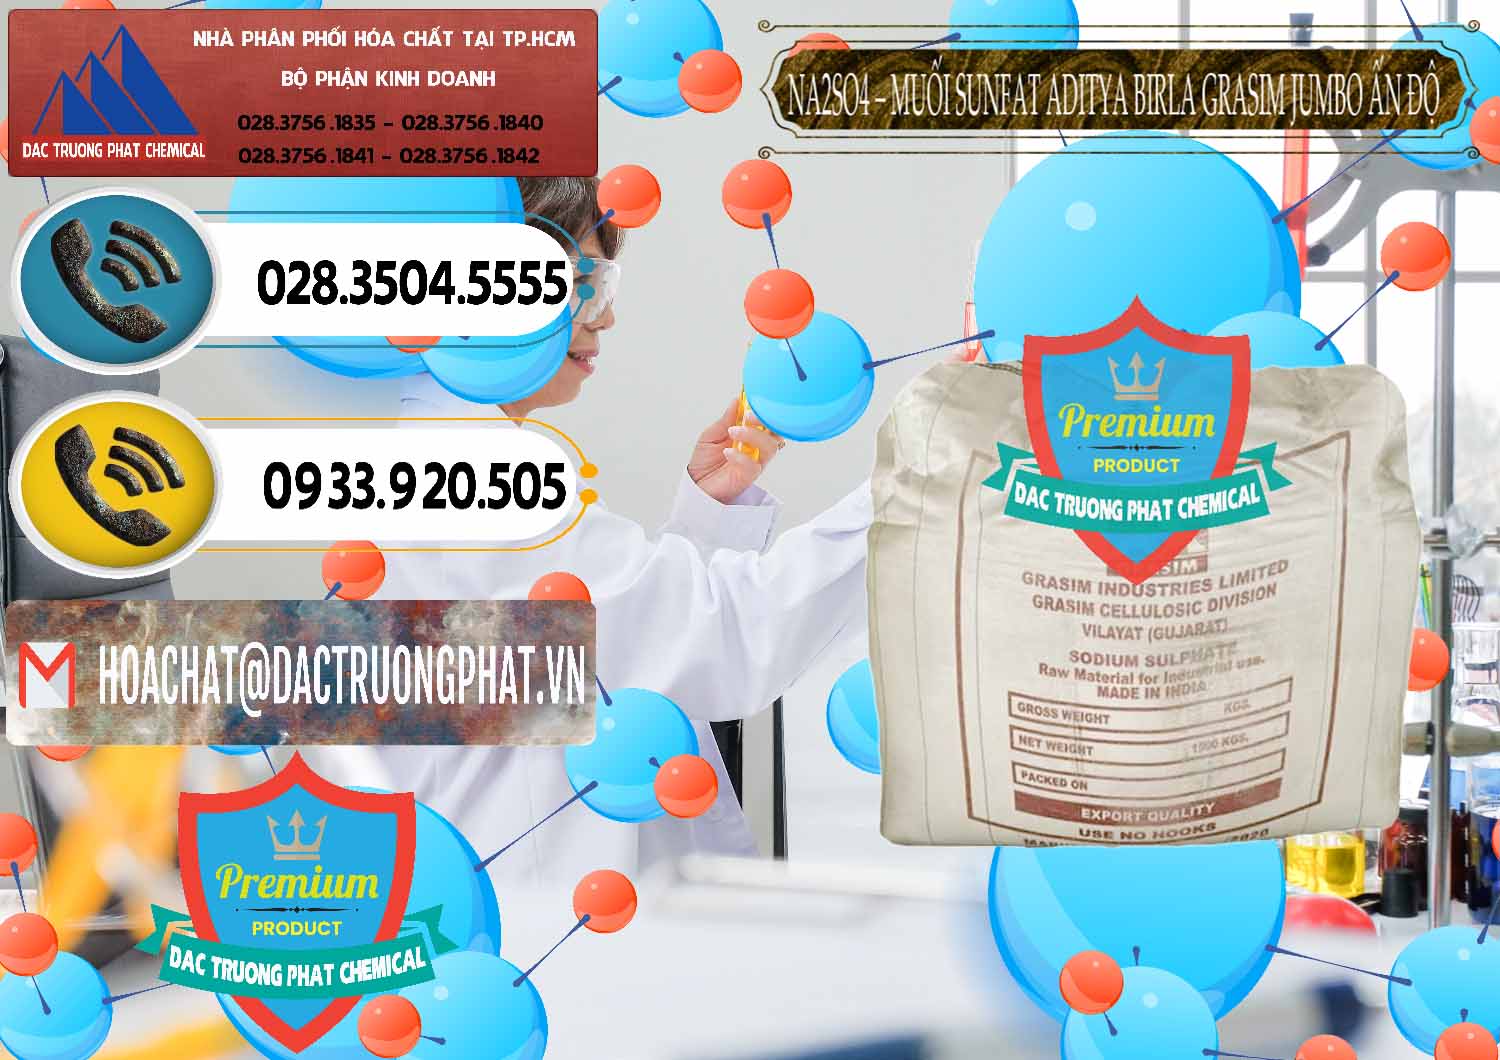 Nơi chuyên nhập khẩu - bán Sodium Sulphate - Muối Sunfat Na2SO4 Jumbo Bành Aditya Birla Grasim Ấn Độ India - 0357 - Kinh doanh ( cung cấp ) hóa chất tại TP.HCM - hoachatdetnhuom.vn